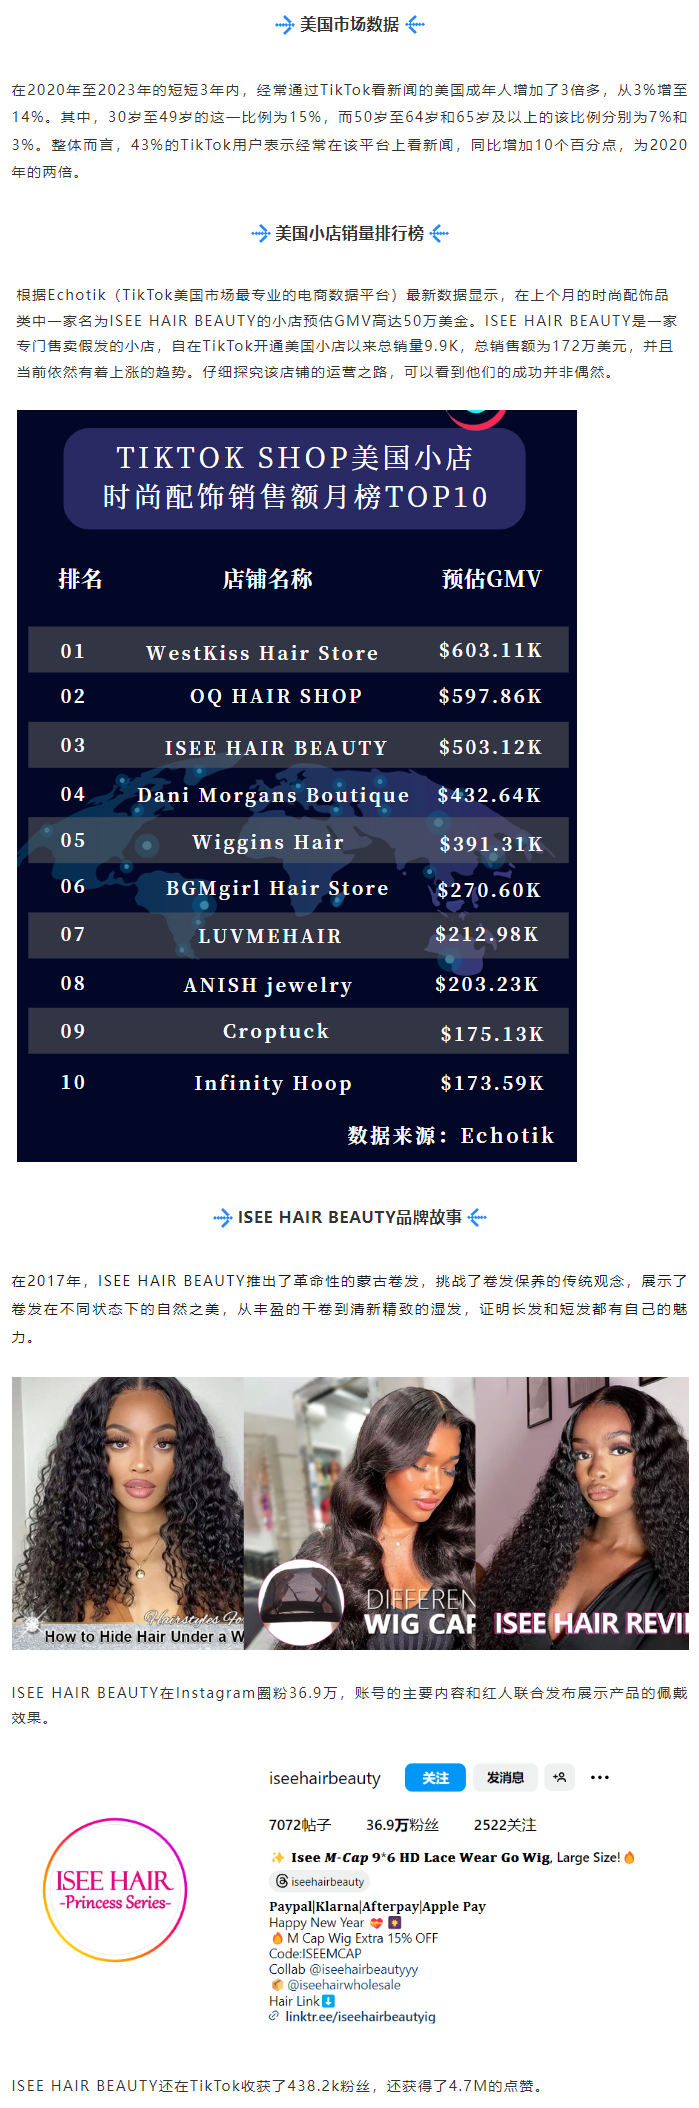 ISEE HAIR BEAUTY假发在TikTok月销售额逼近50万美元，创造销售佳绩！